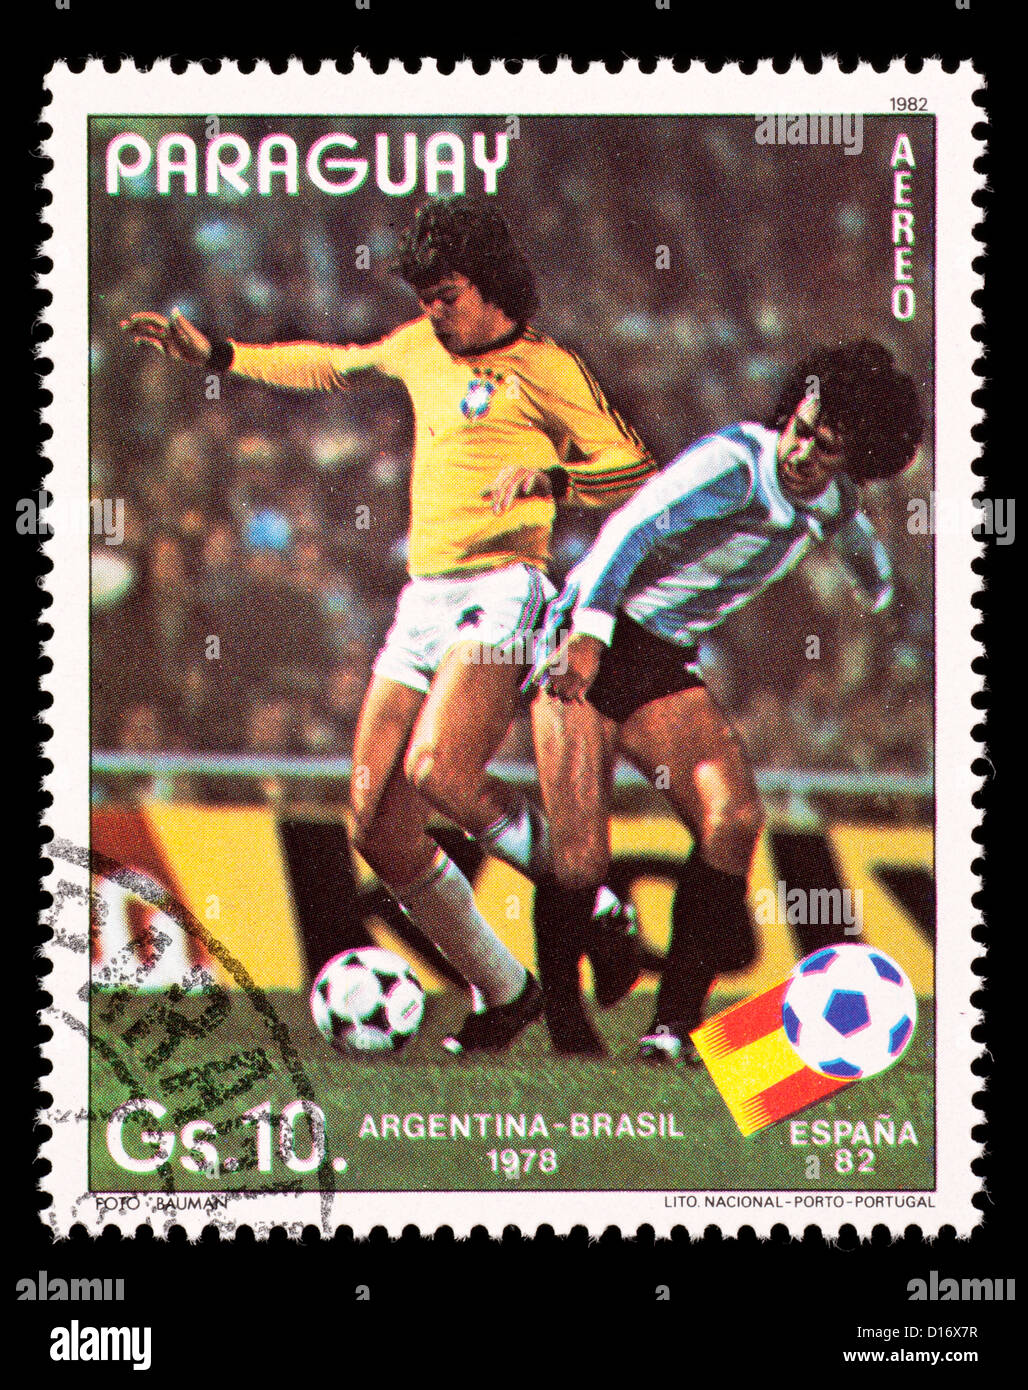 Timbre du Paraguay représentant des joueurs de football, émis pour la Coupe du Monde de Football 1982 en Espagne. Banque D'Images